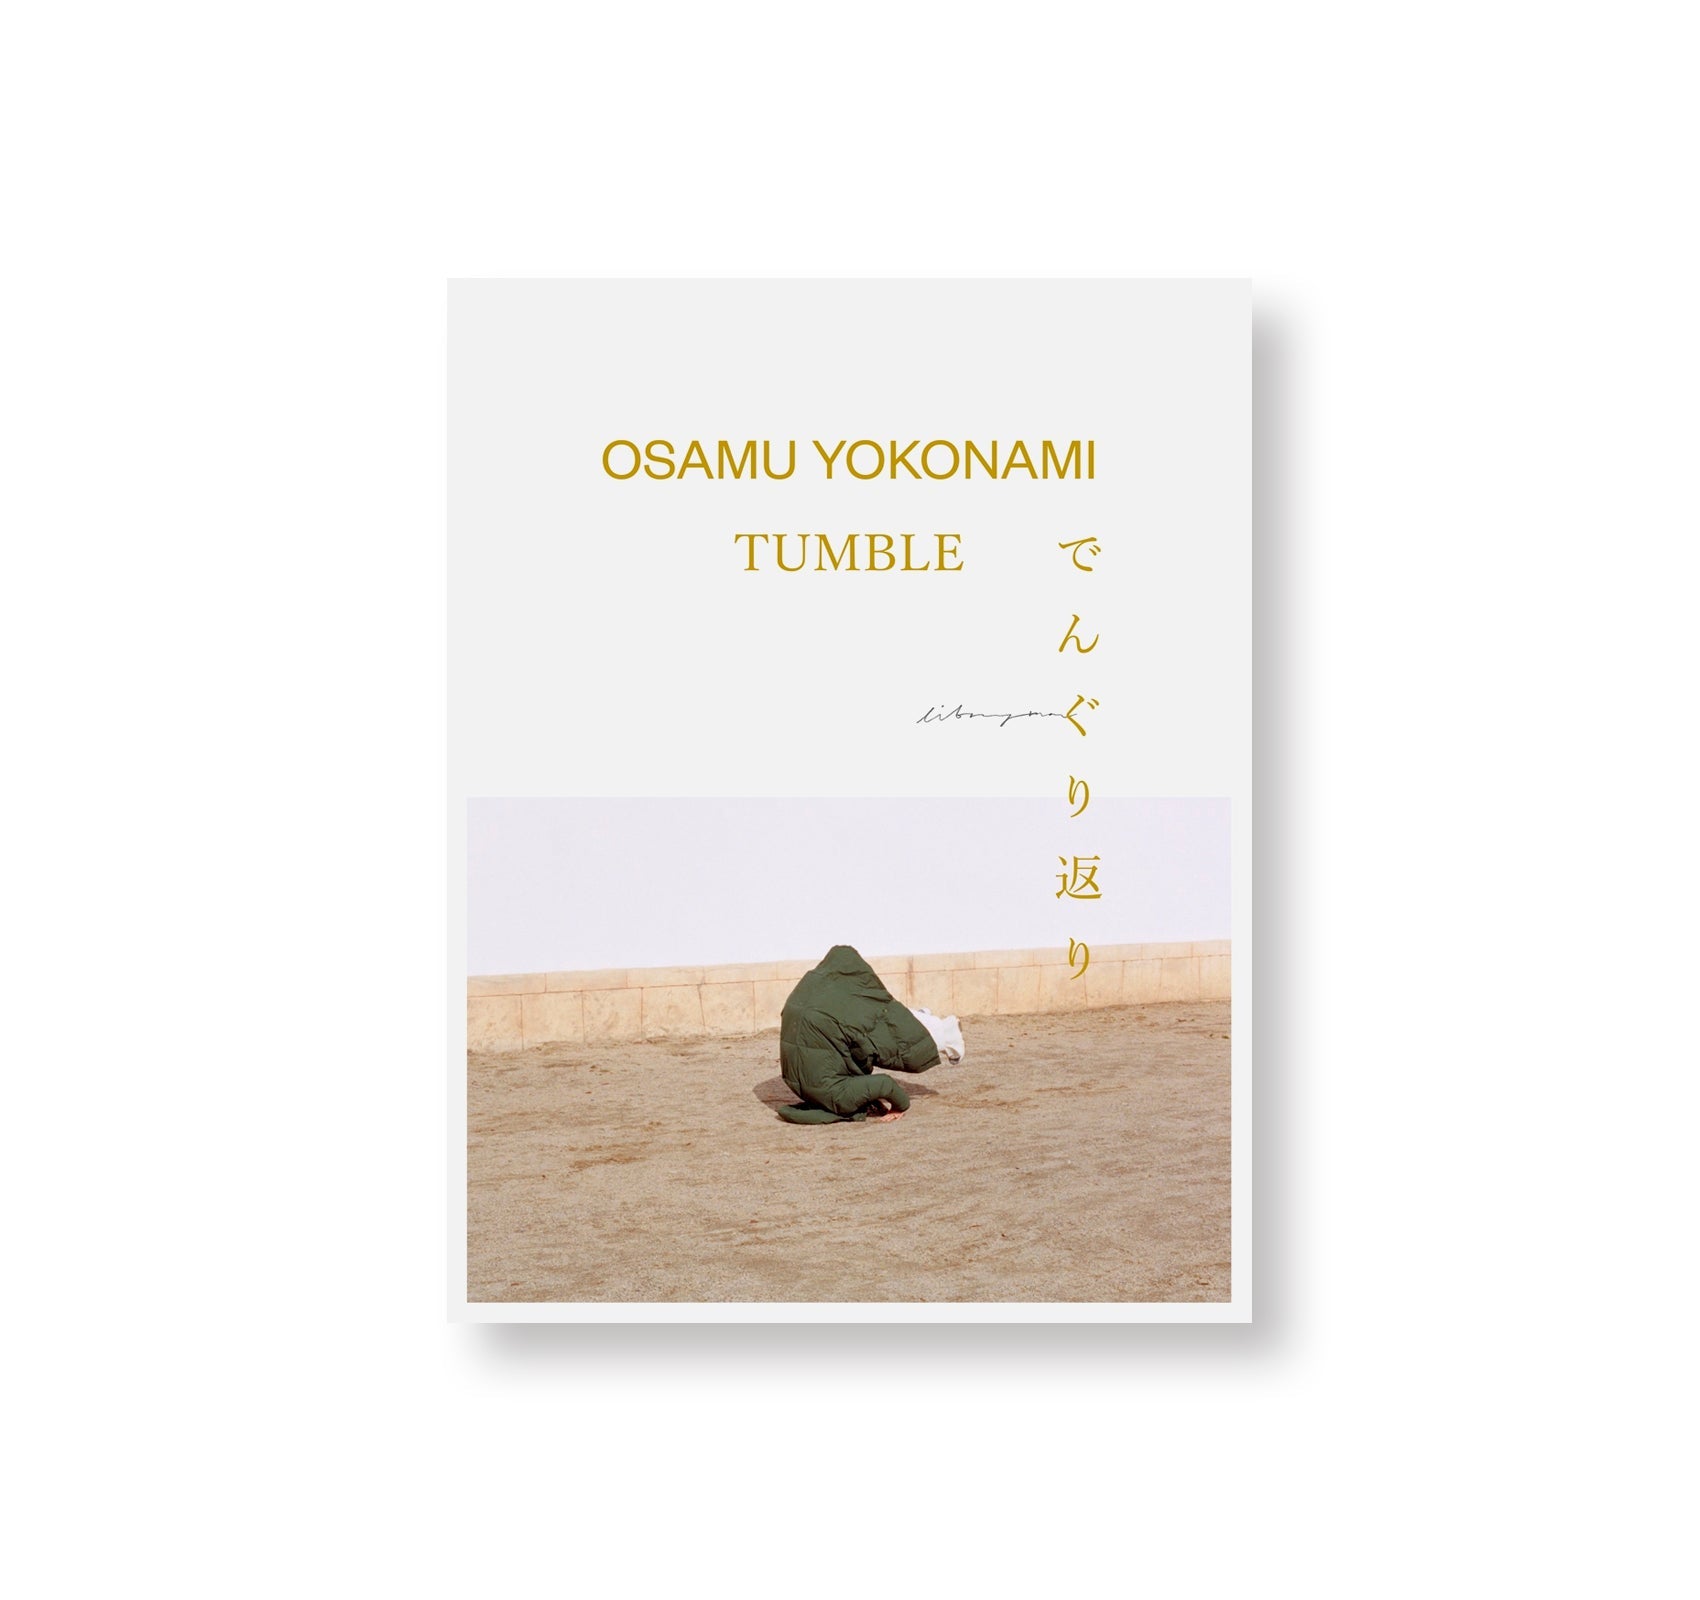 TUMBLE by Osamu Yokonami [SPECIAL EDITION]